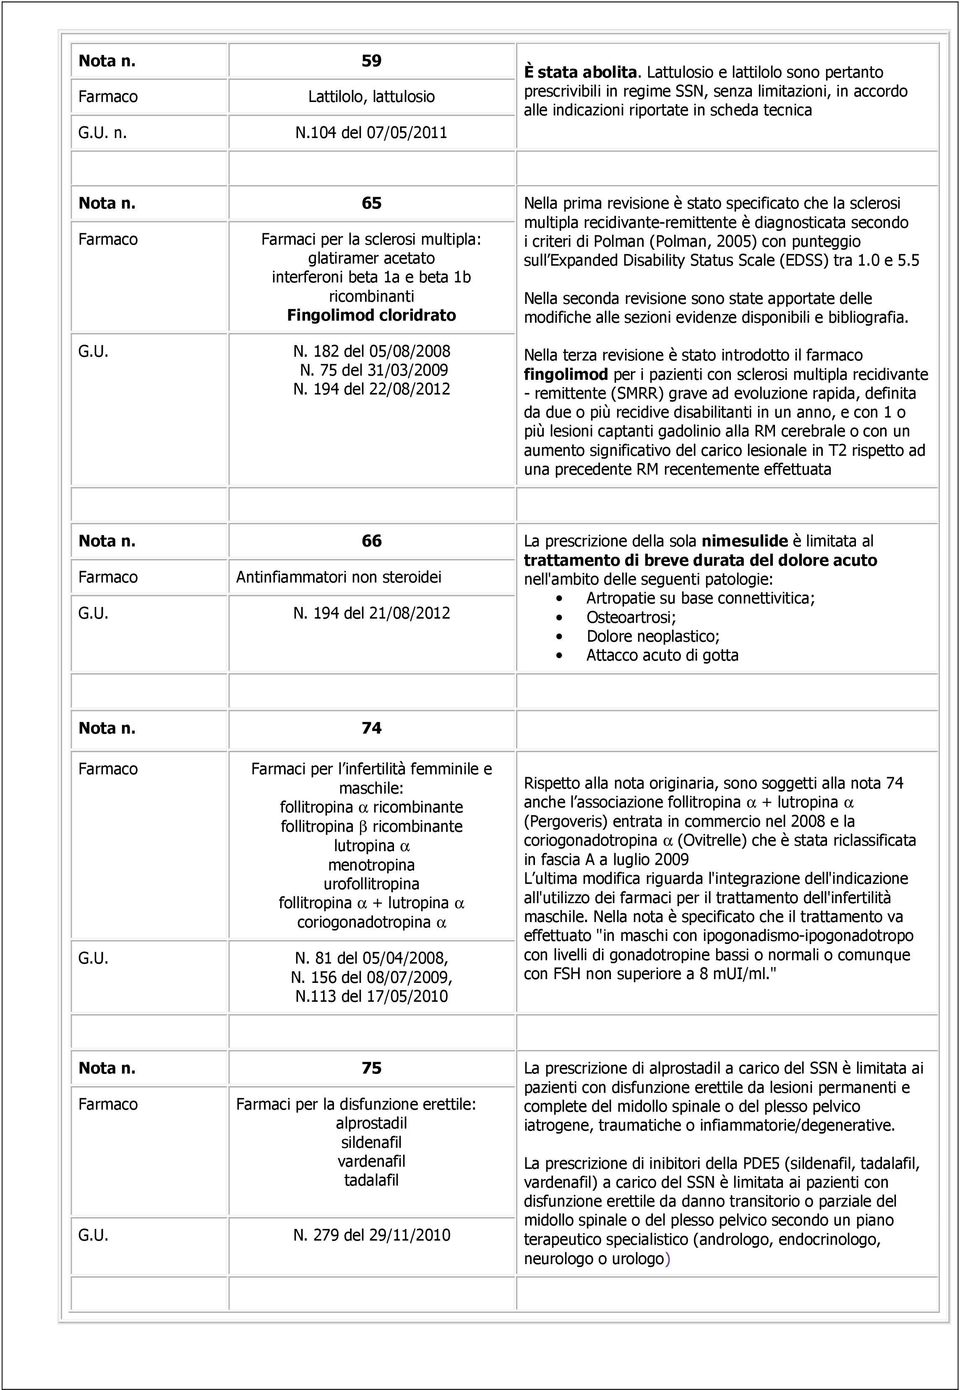 65 Farmaci per la sclerosi multipla: glatiramer acetato interferoni beta 1a e beta 1b ricombinanti Fingolimod cloridrato N. 182 del 05/08/2008 N. 75 del 31/03/2009 N.